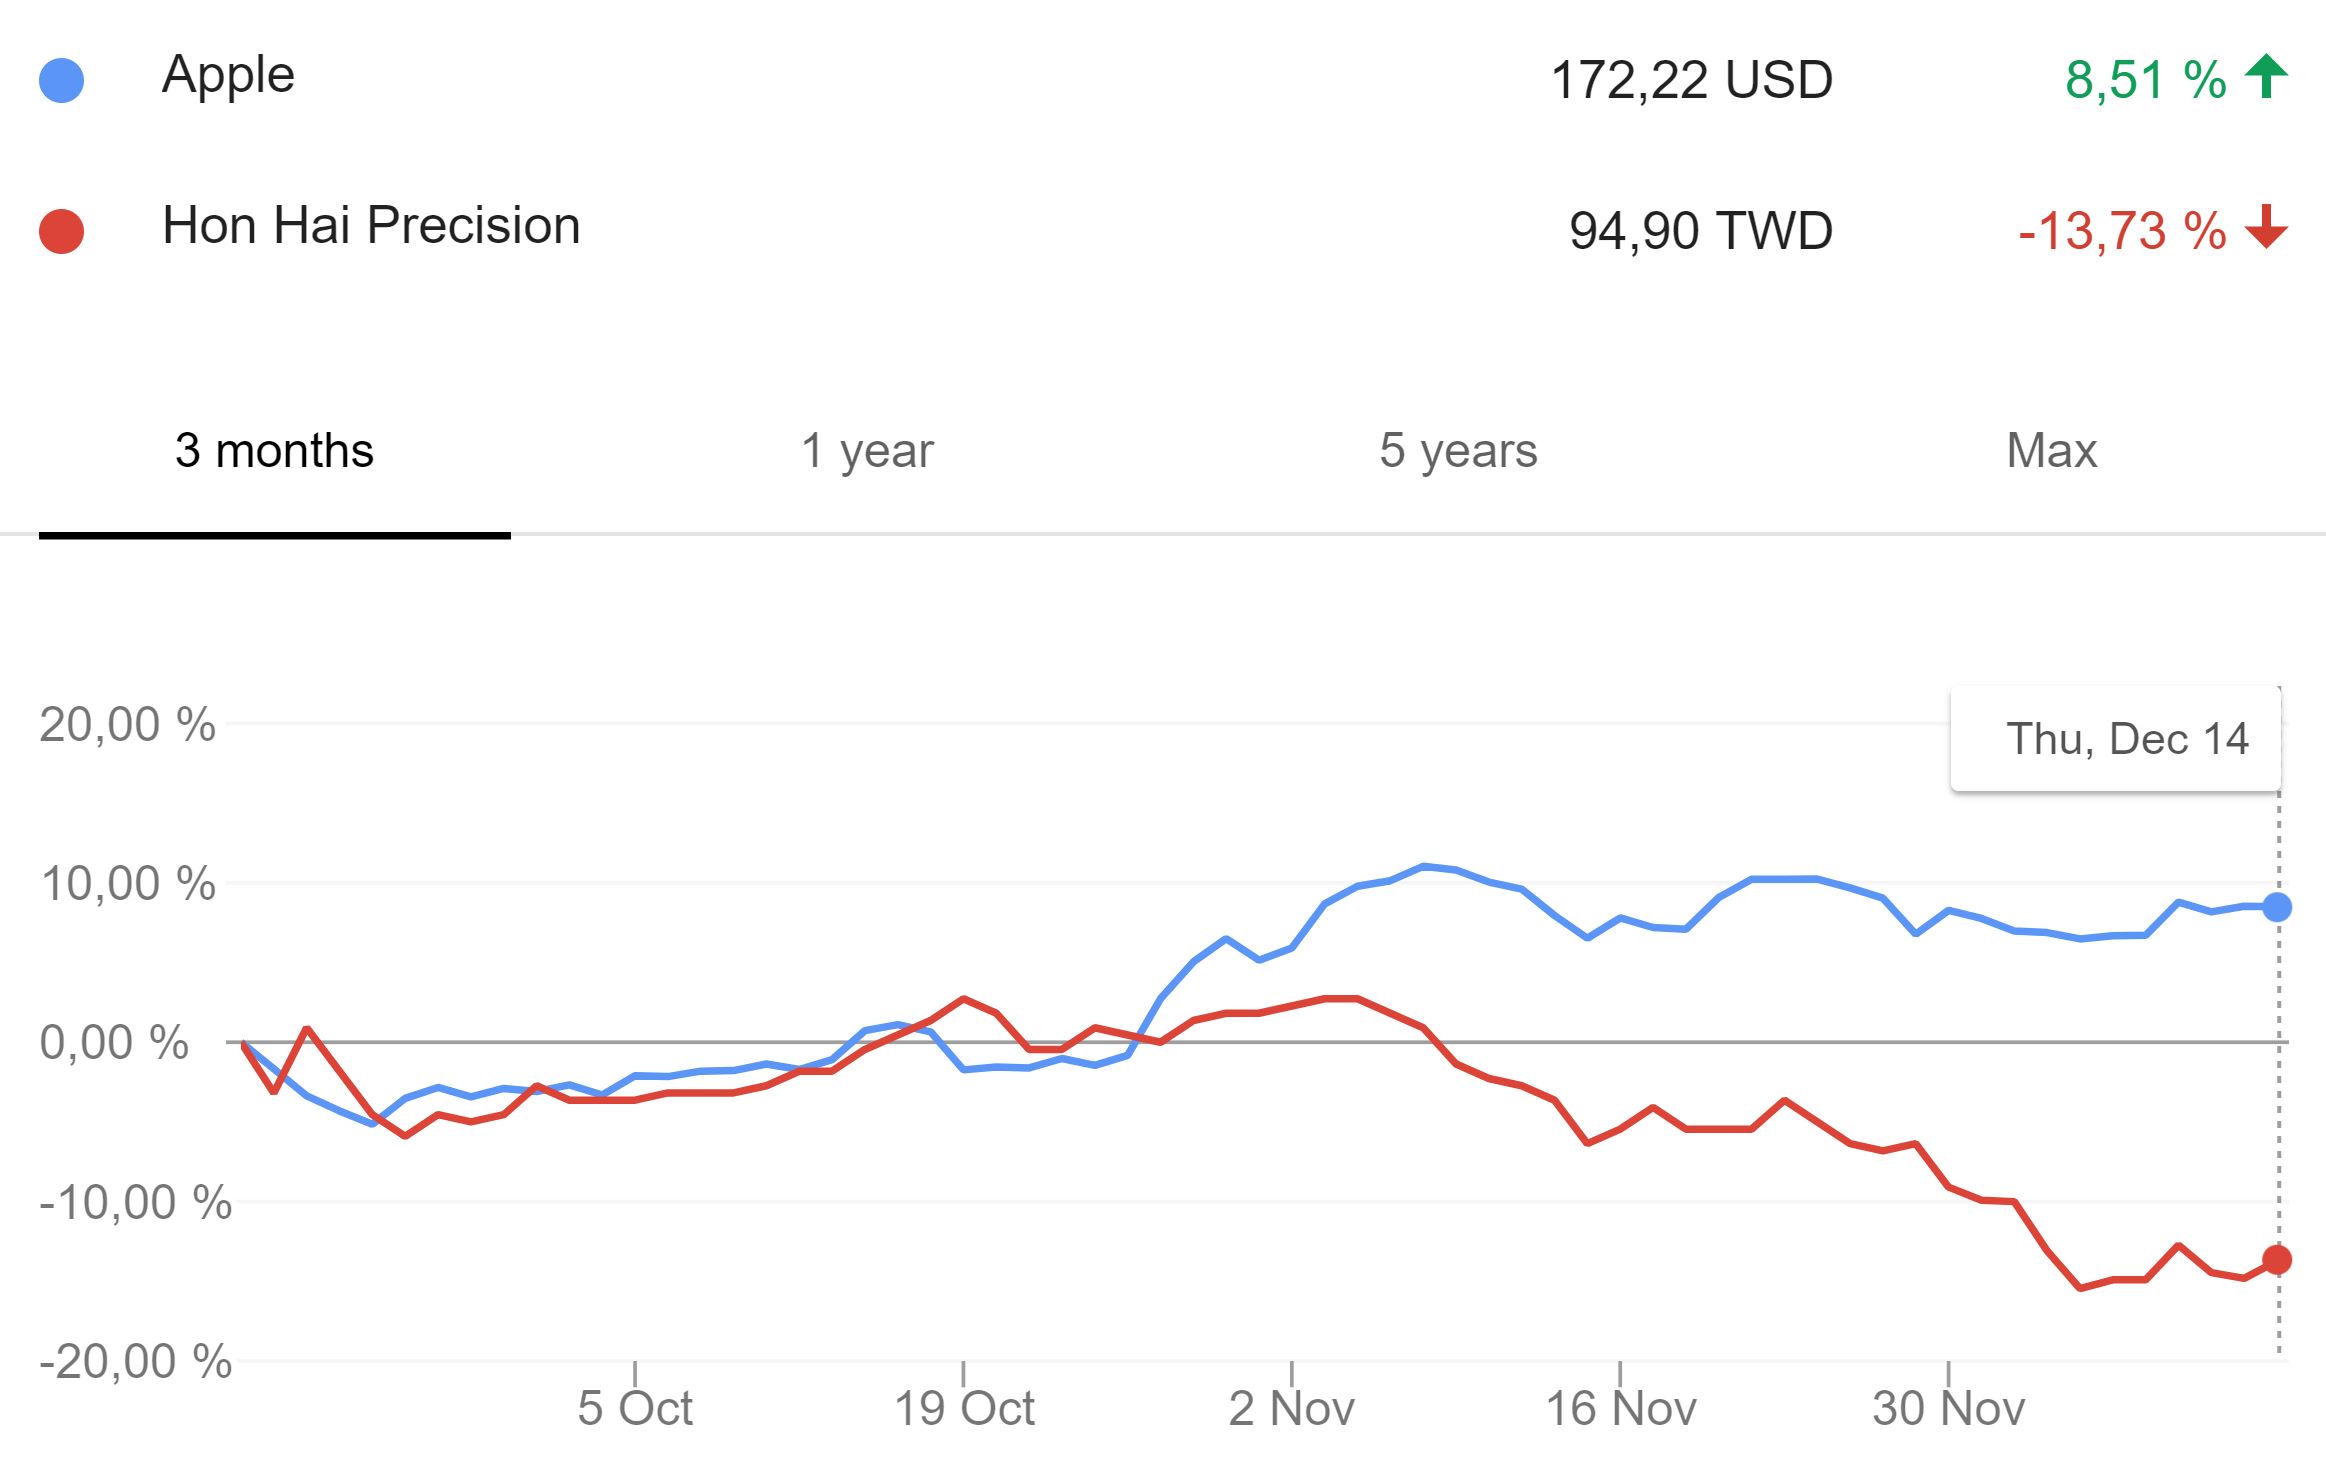 Apple vs Hon Hai Technology Group (Foxconn) stock